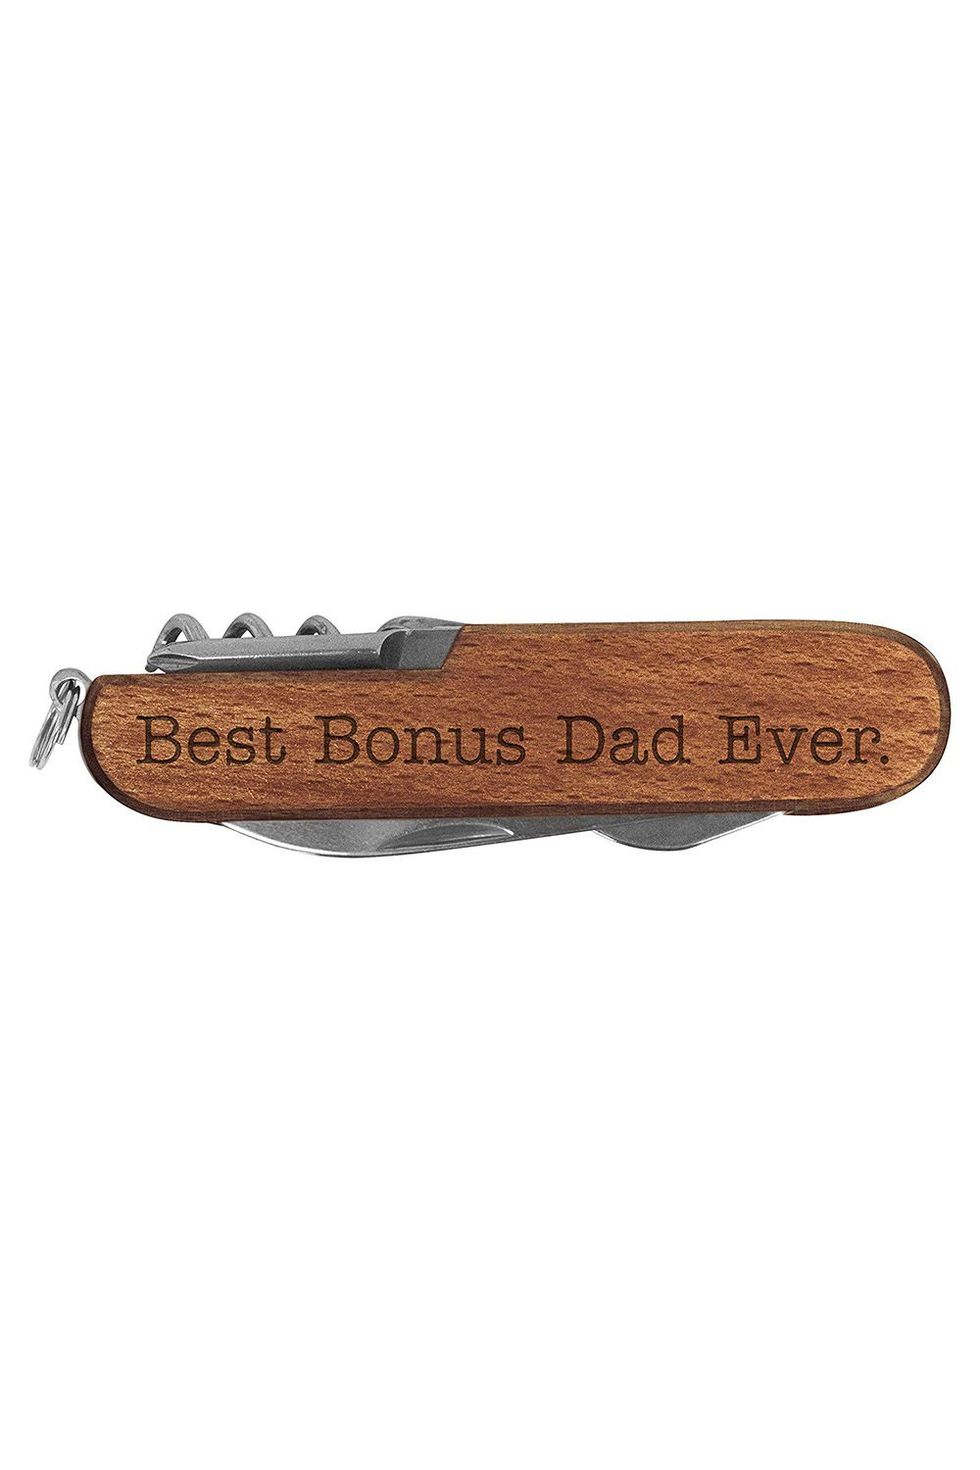 Stepdad Engraved Multi-Tool Pocket Knife